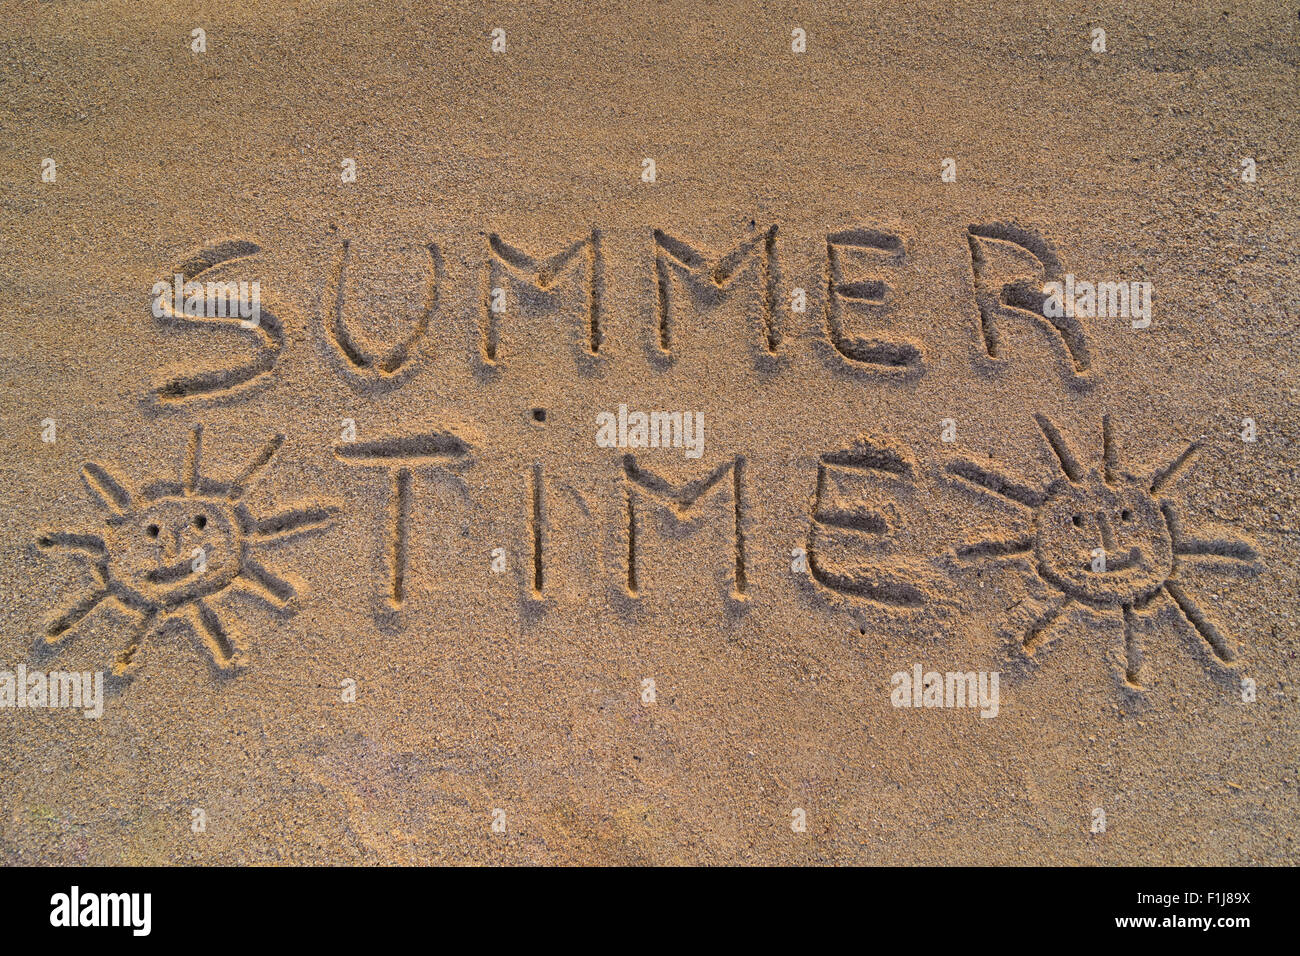 Im Bild die Worte auf dem Sand "Sommerzeit" Stockfoto